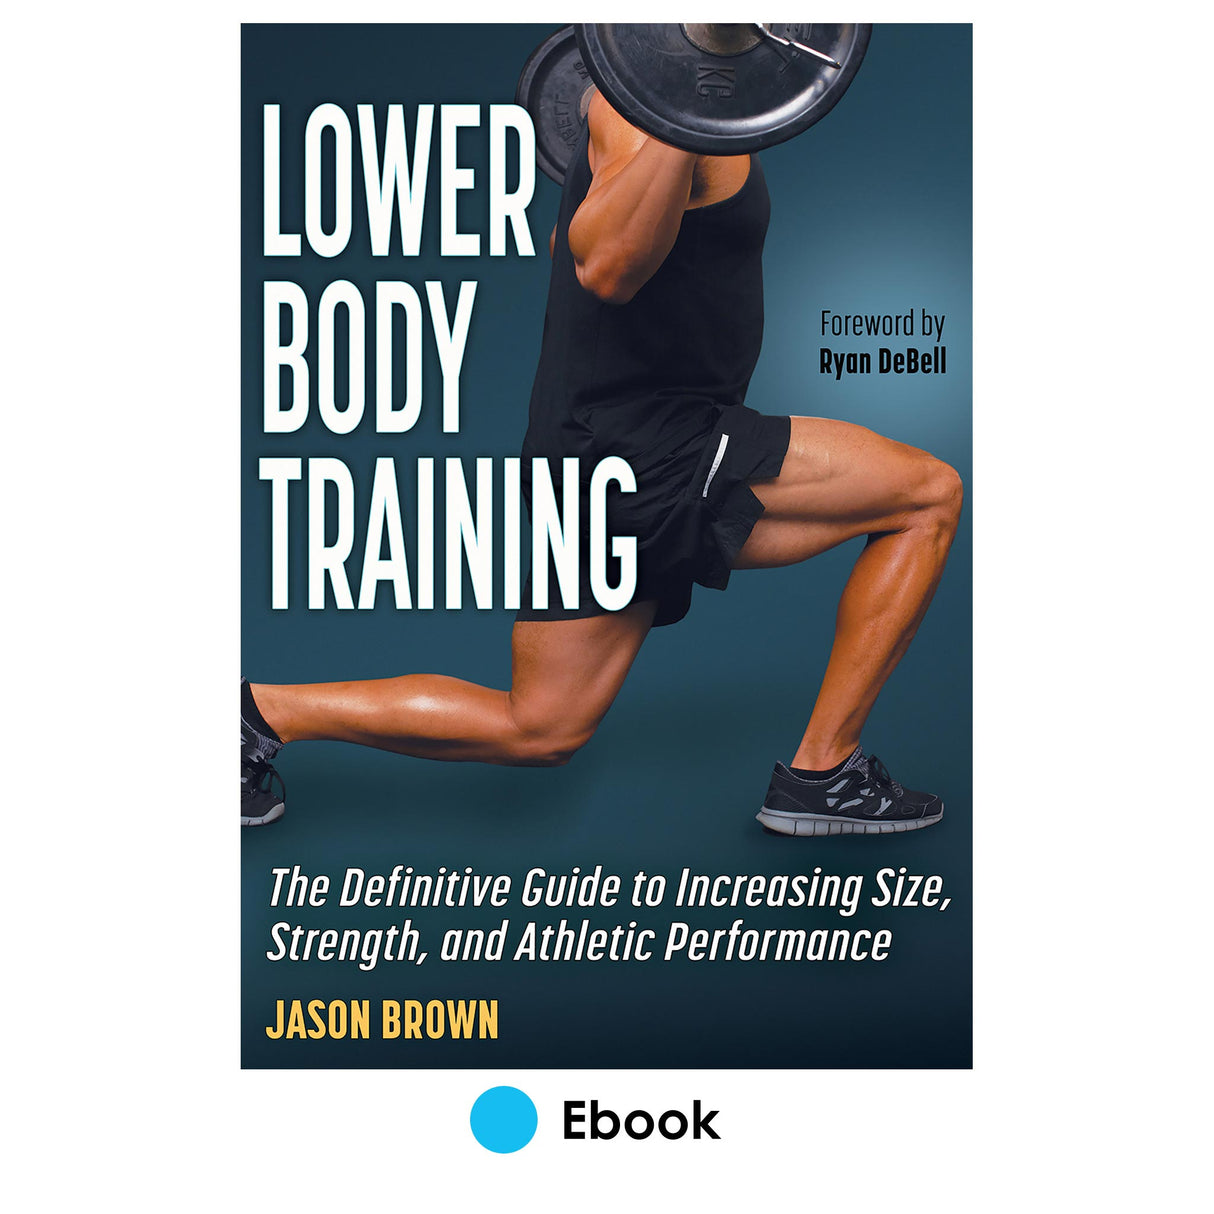 Lower Body Training epub